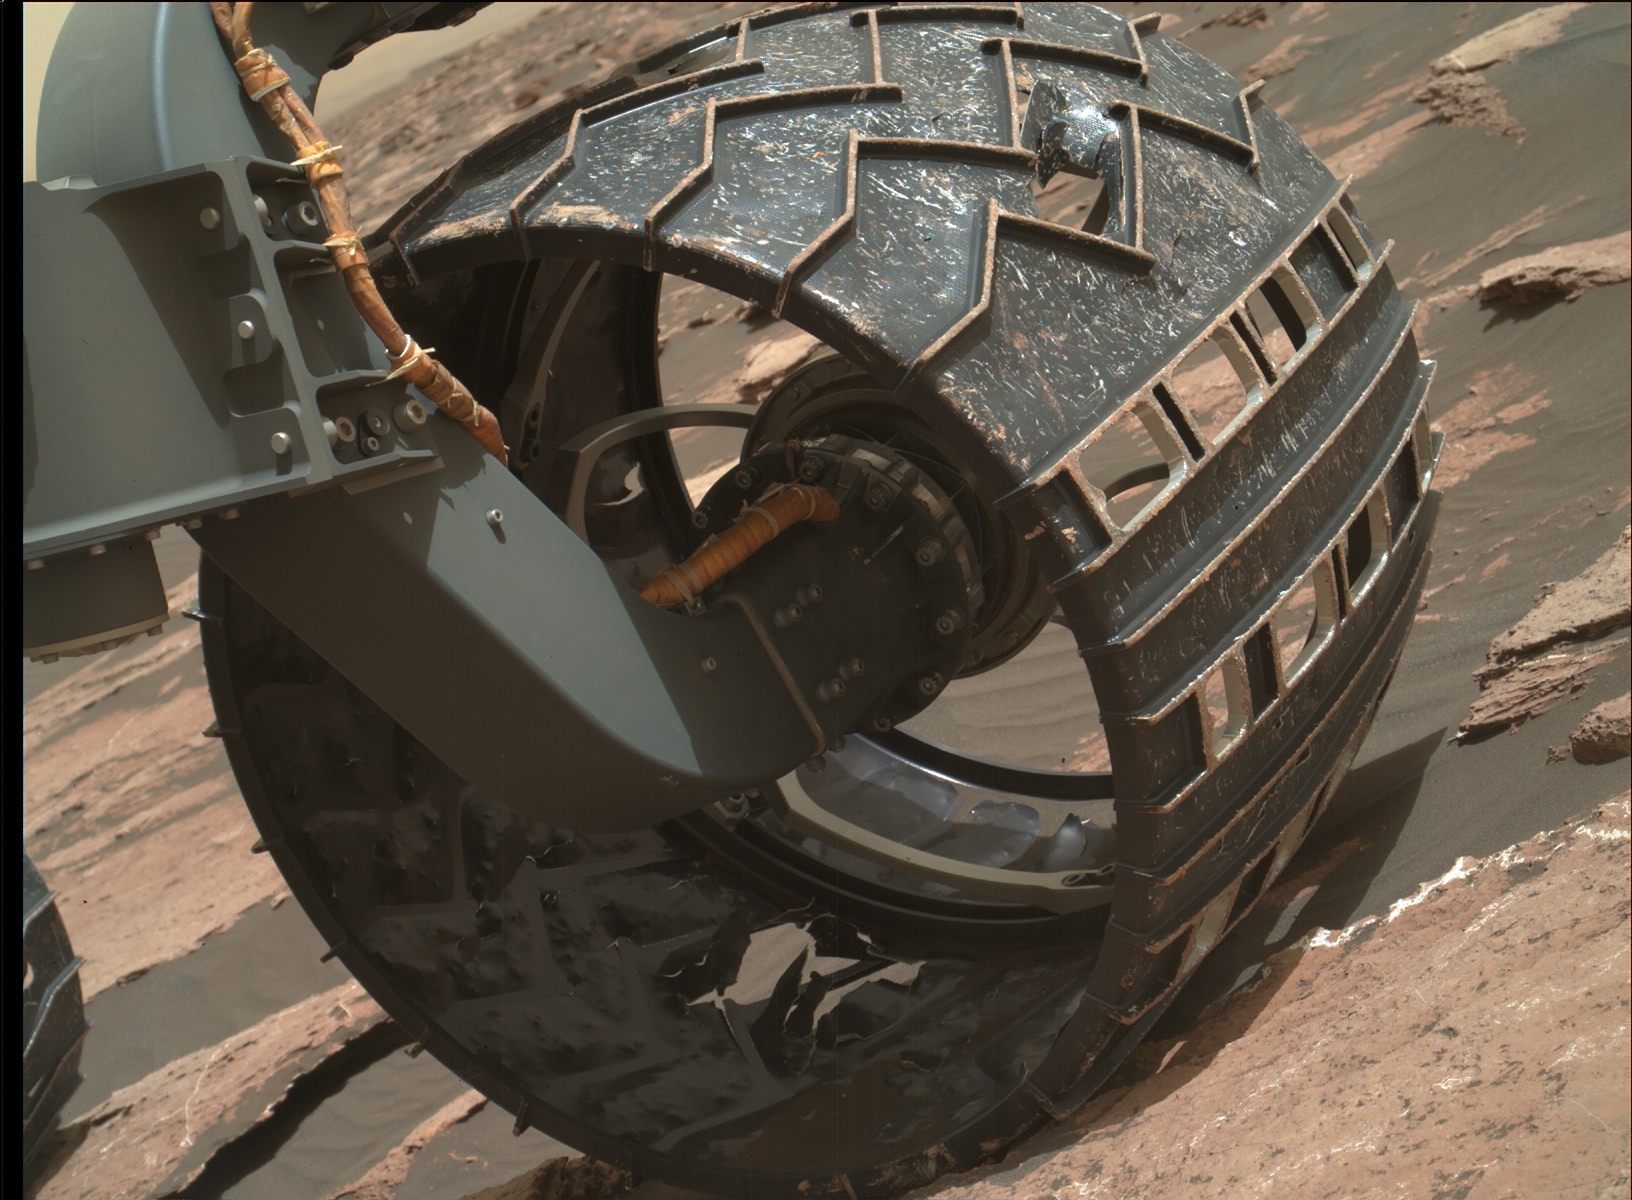 Mars Curiosity Rover - Wheel Wear and Tear - 27 January 2017 : space1632 x 1200